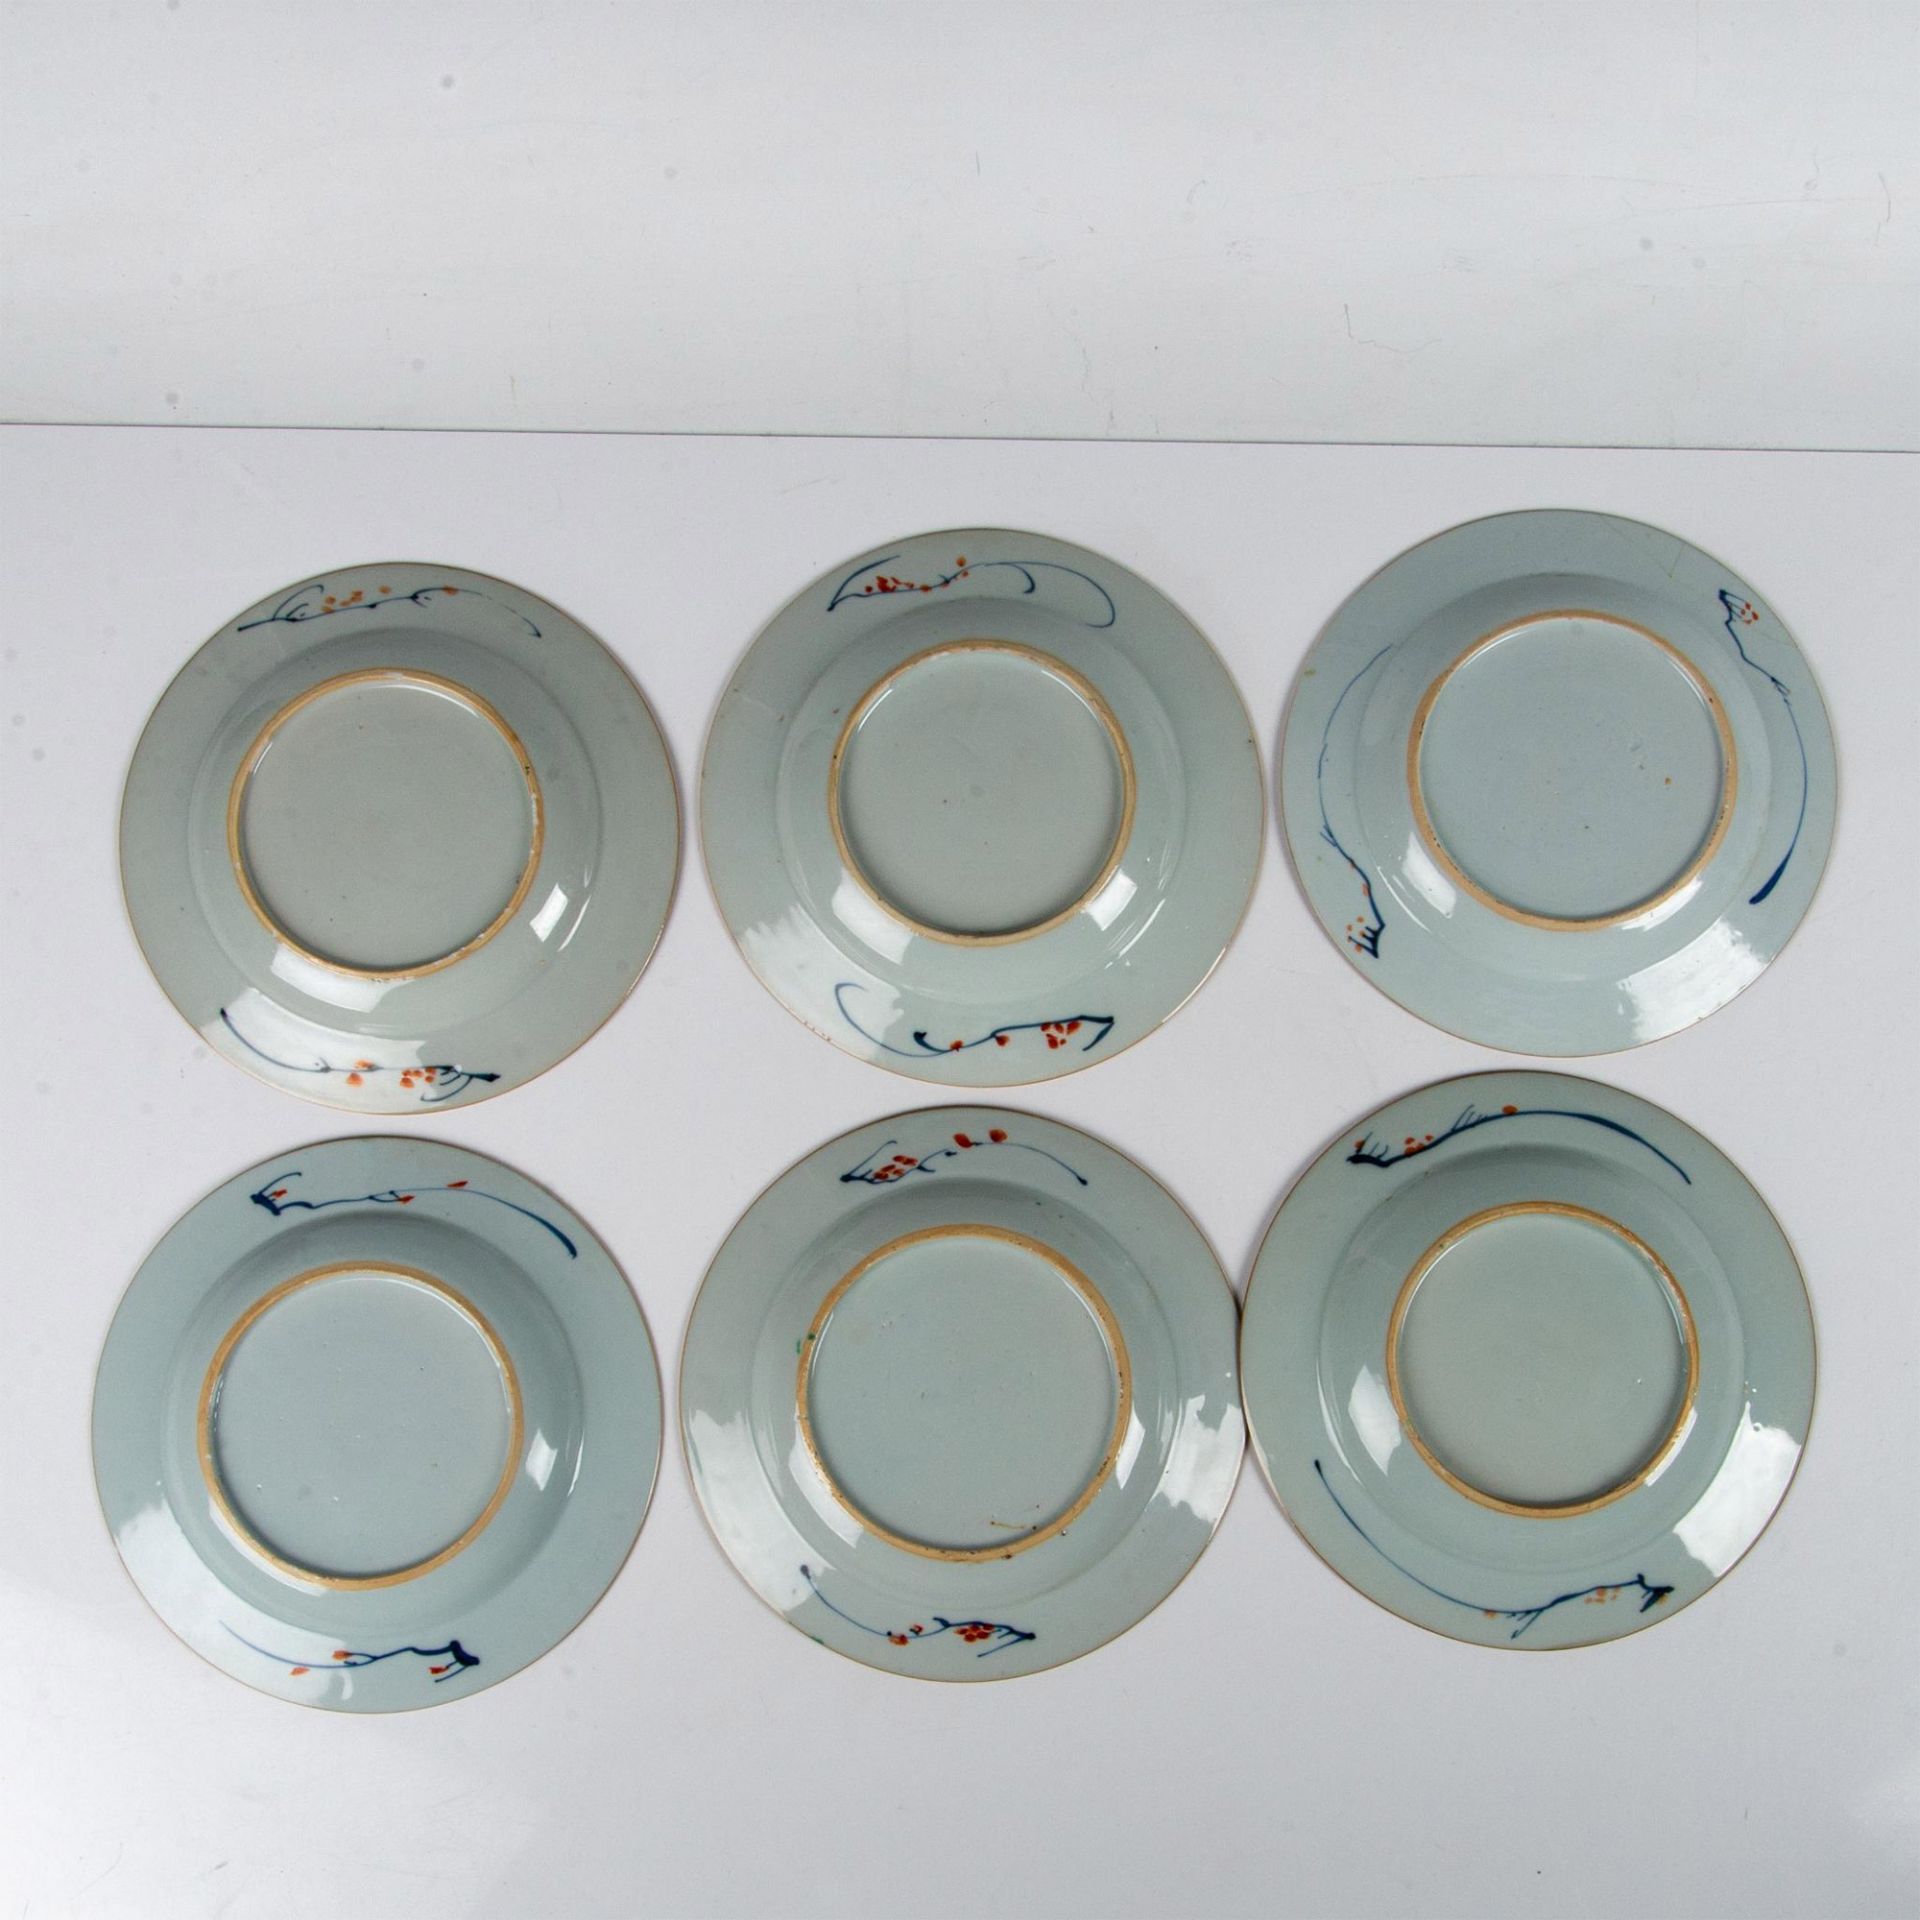 6pc Chinese Imari Porcelain Salad Plates - Image 3 of 5